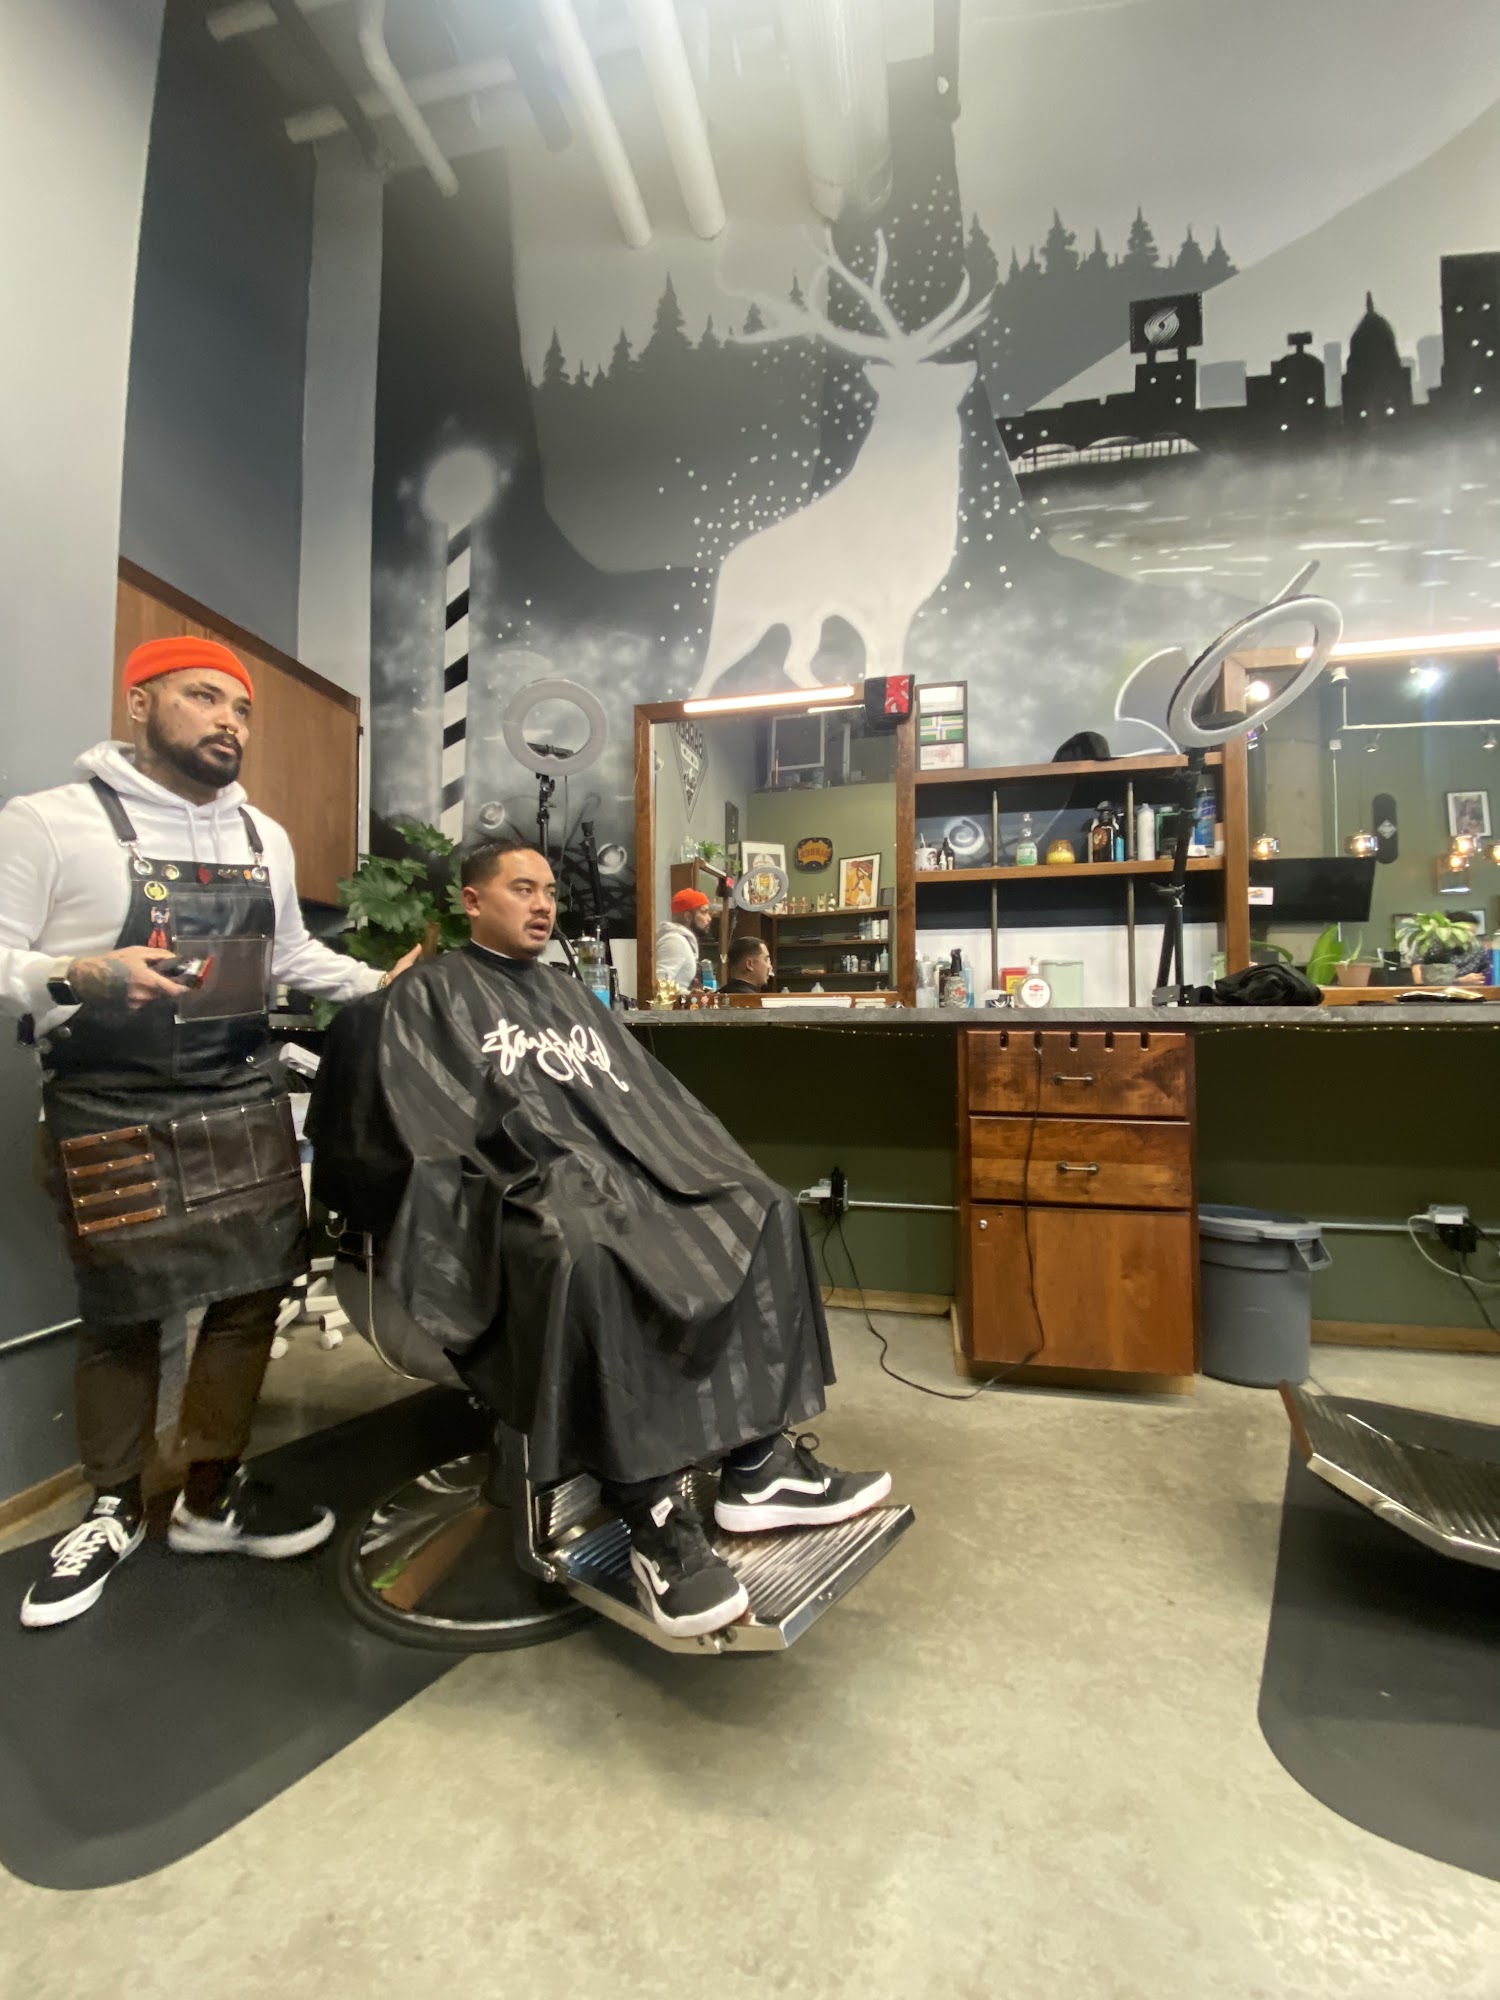 Northwest Barber Association